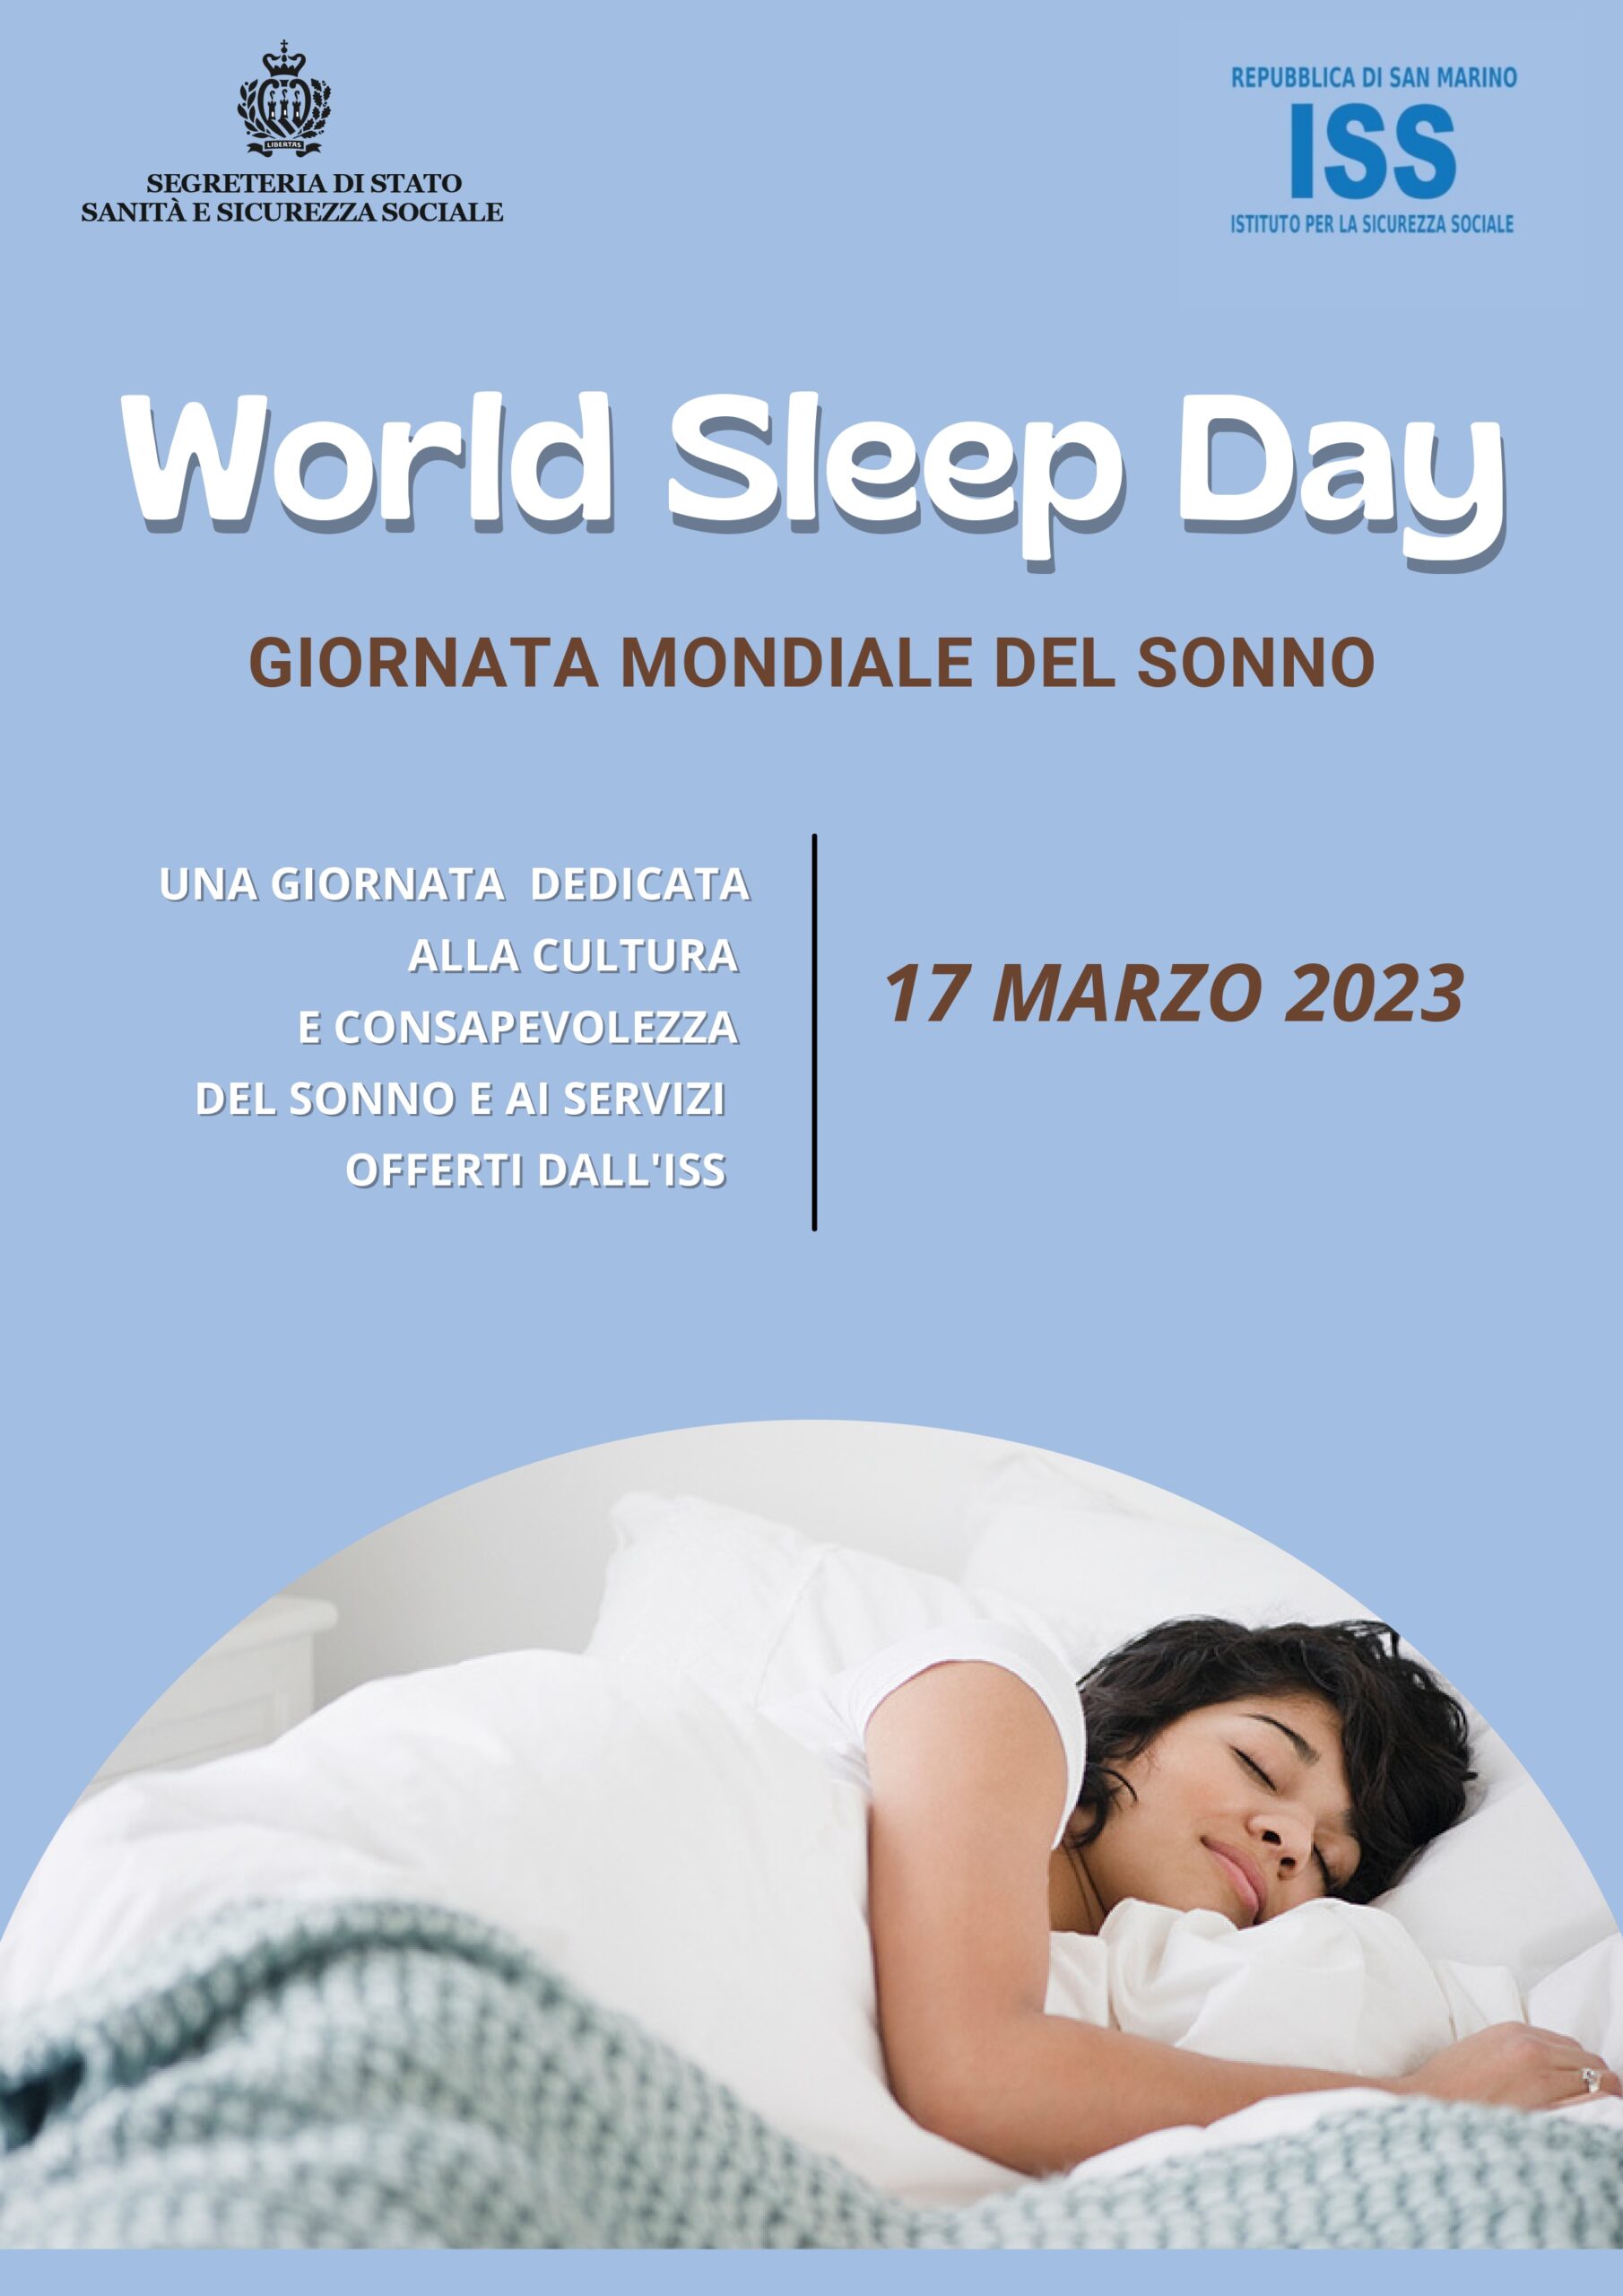 Anche San Marino aderisce alla Giornata mondiale del sonno